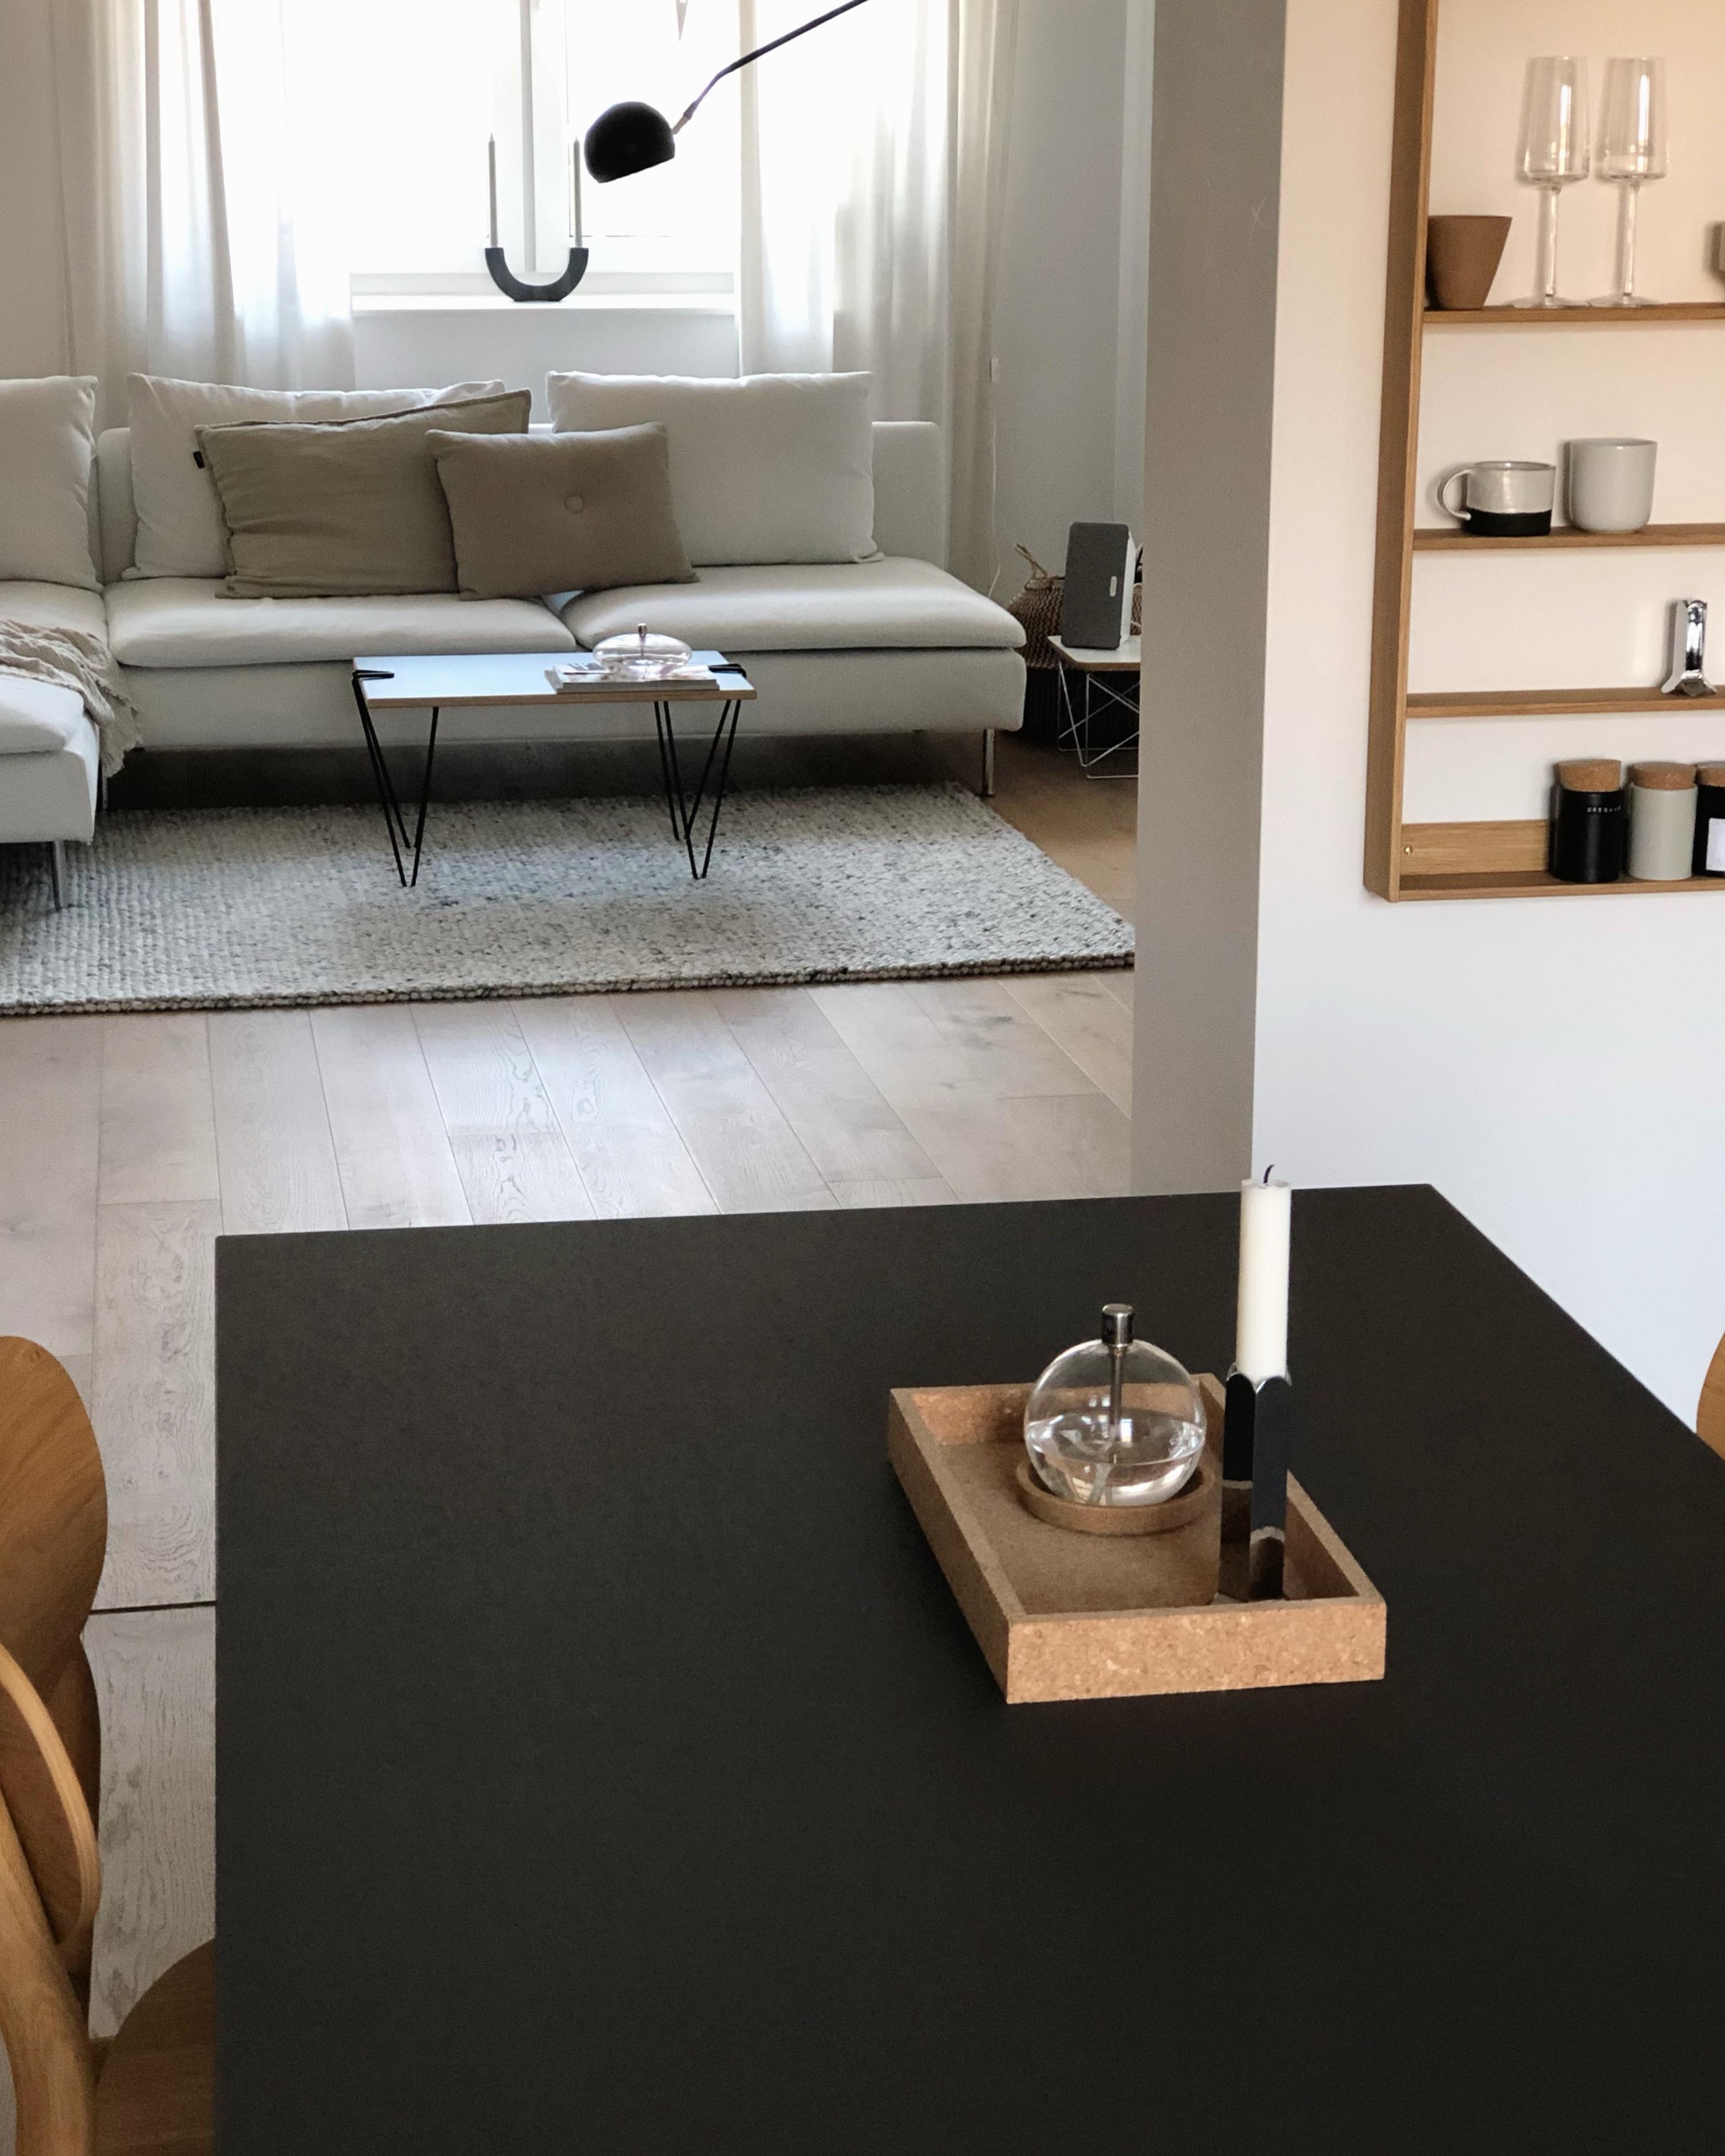 #wohnzimmer #livingroom #küche #kitchen #aufbewahrung #wanddeko #deko #couchstyle #skandinavisch #scandi #home